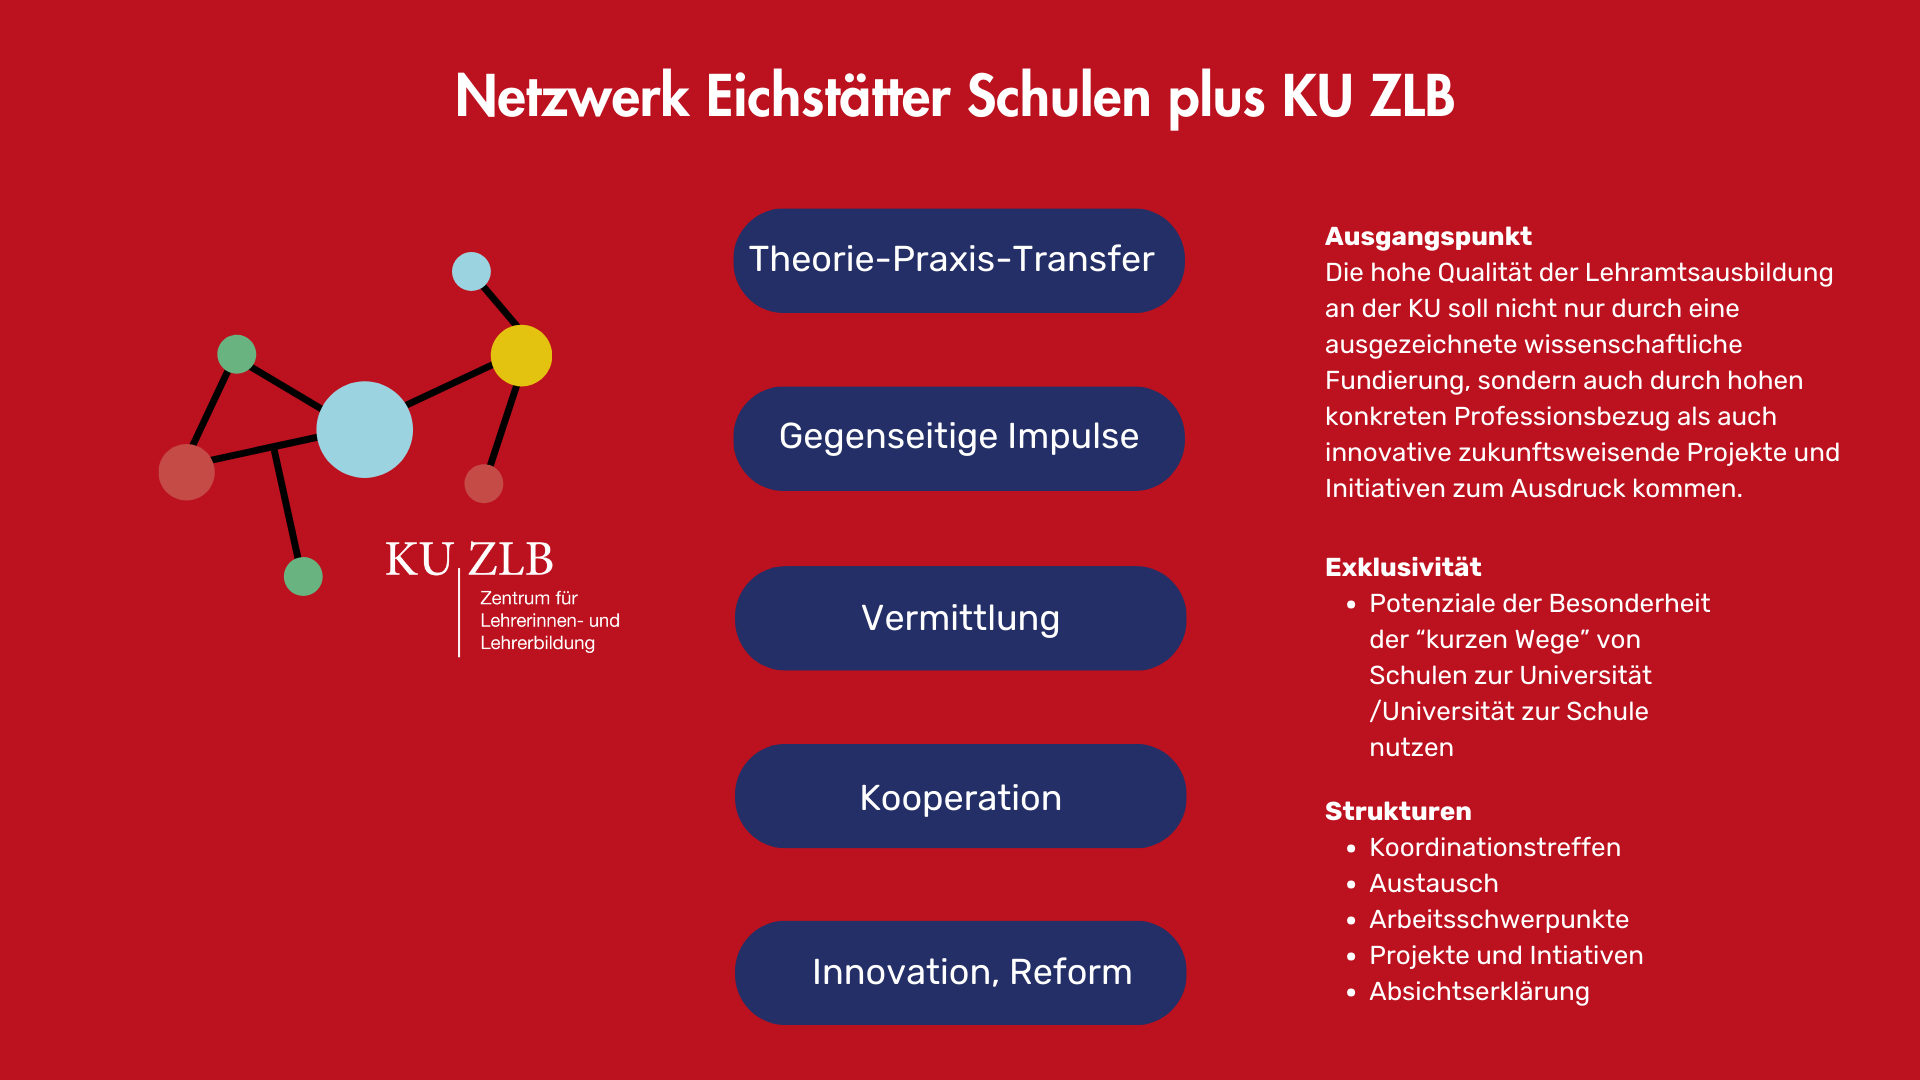 Netzwerk Eichstätter Schulen plus KU ZLB - Struktur